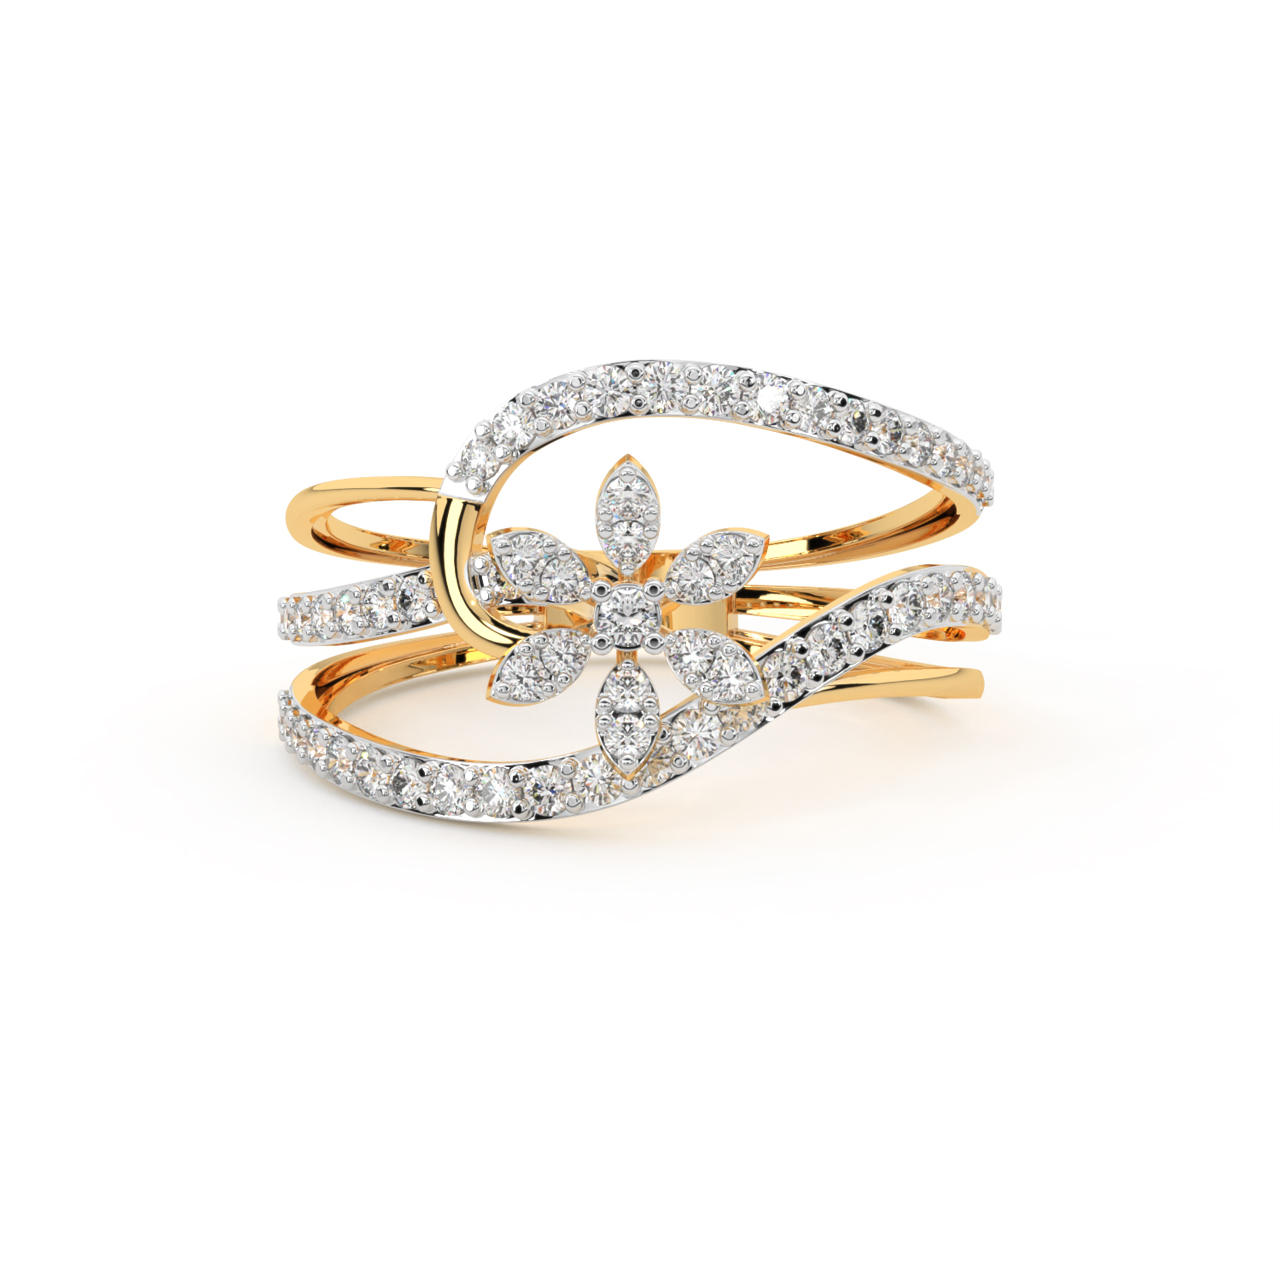 Shimmer Flower Engagement Ring